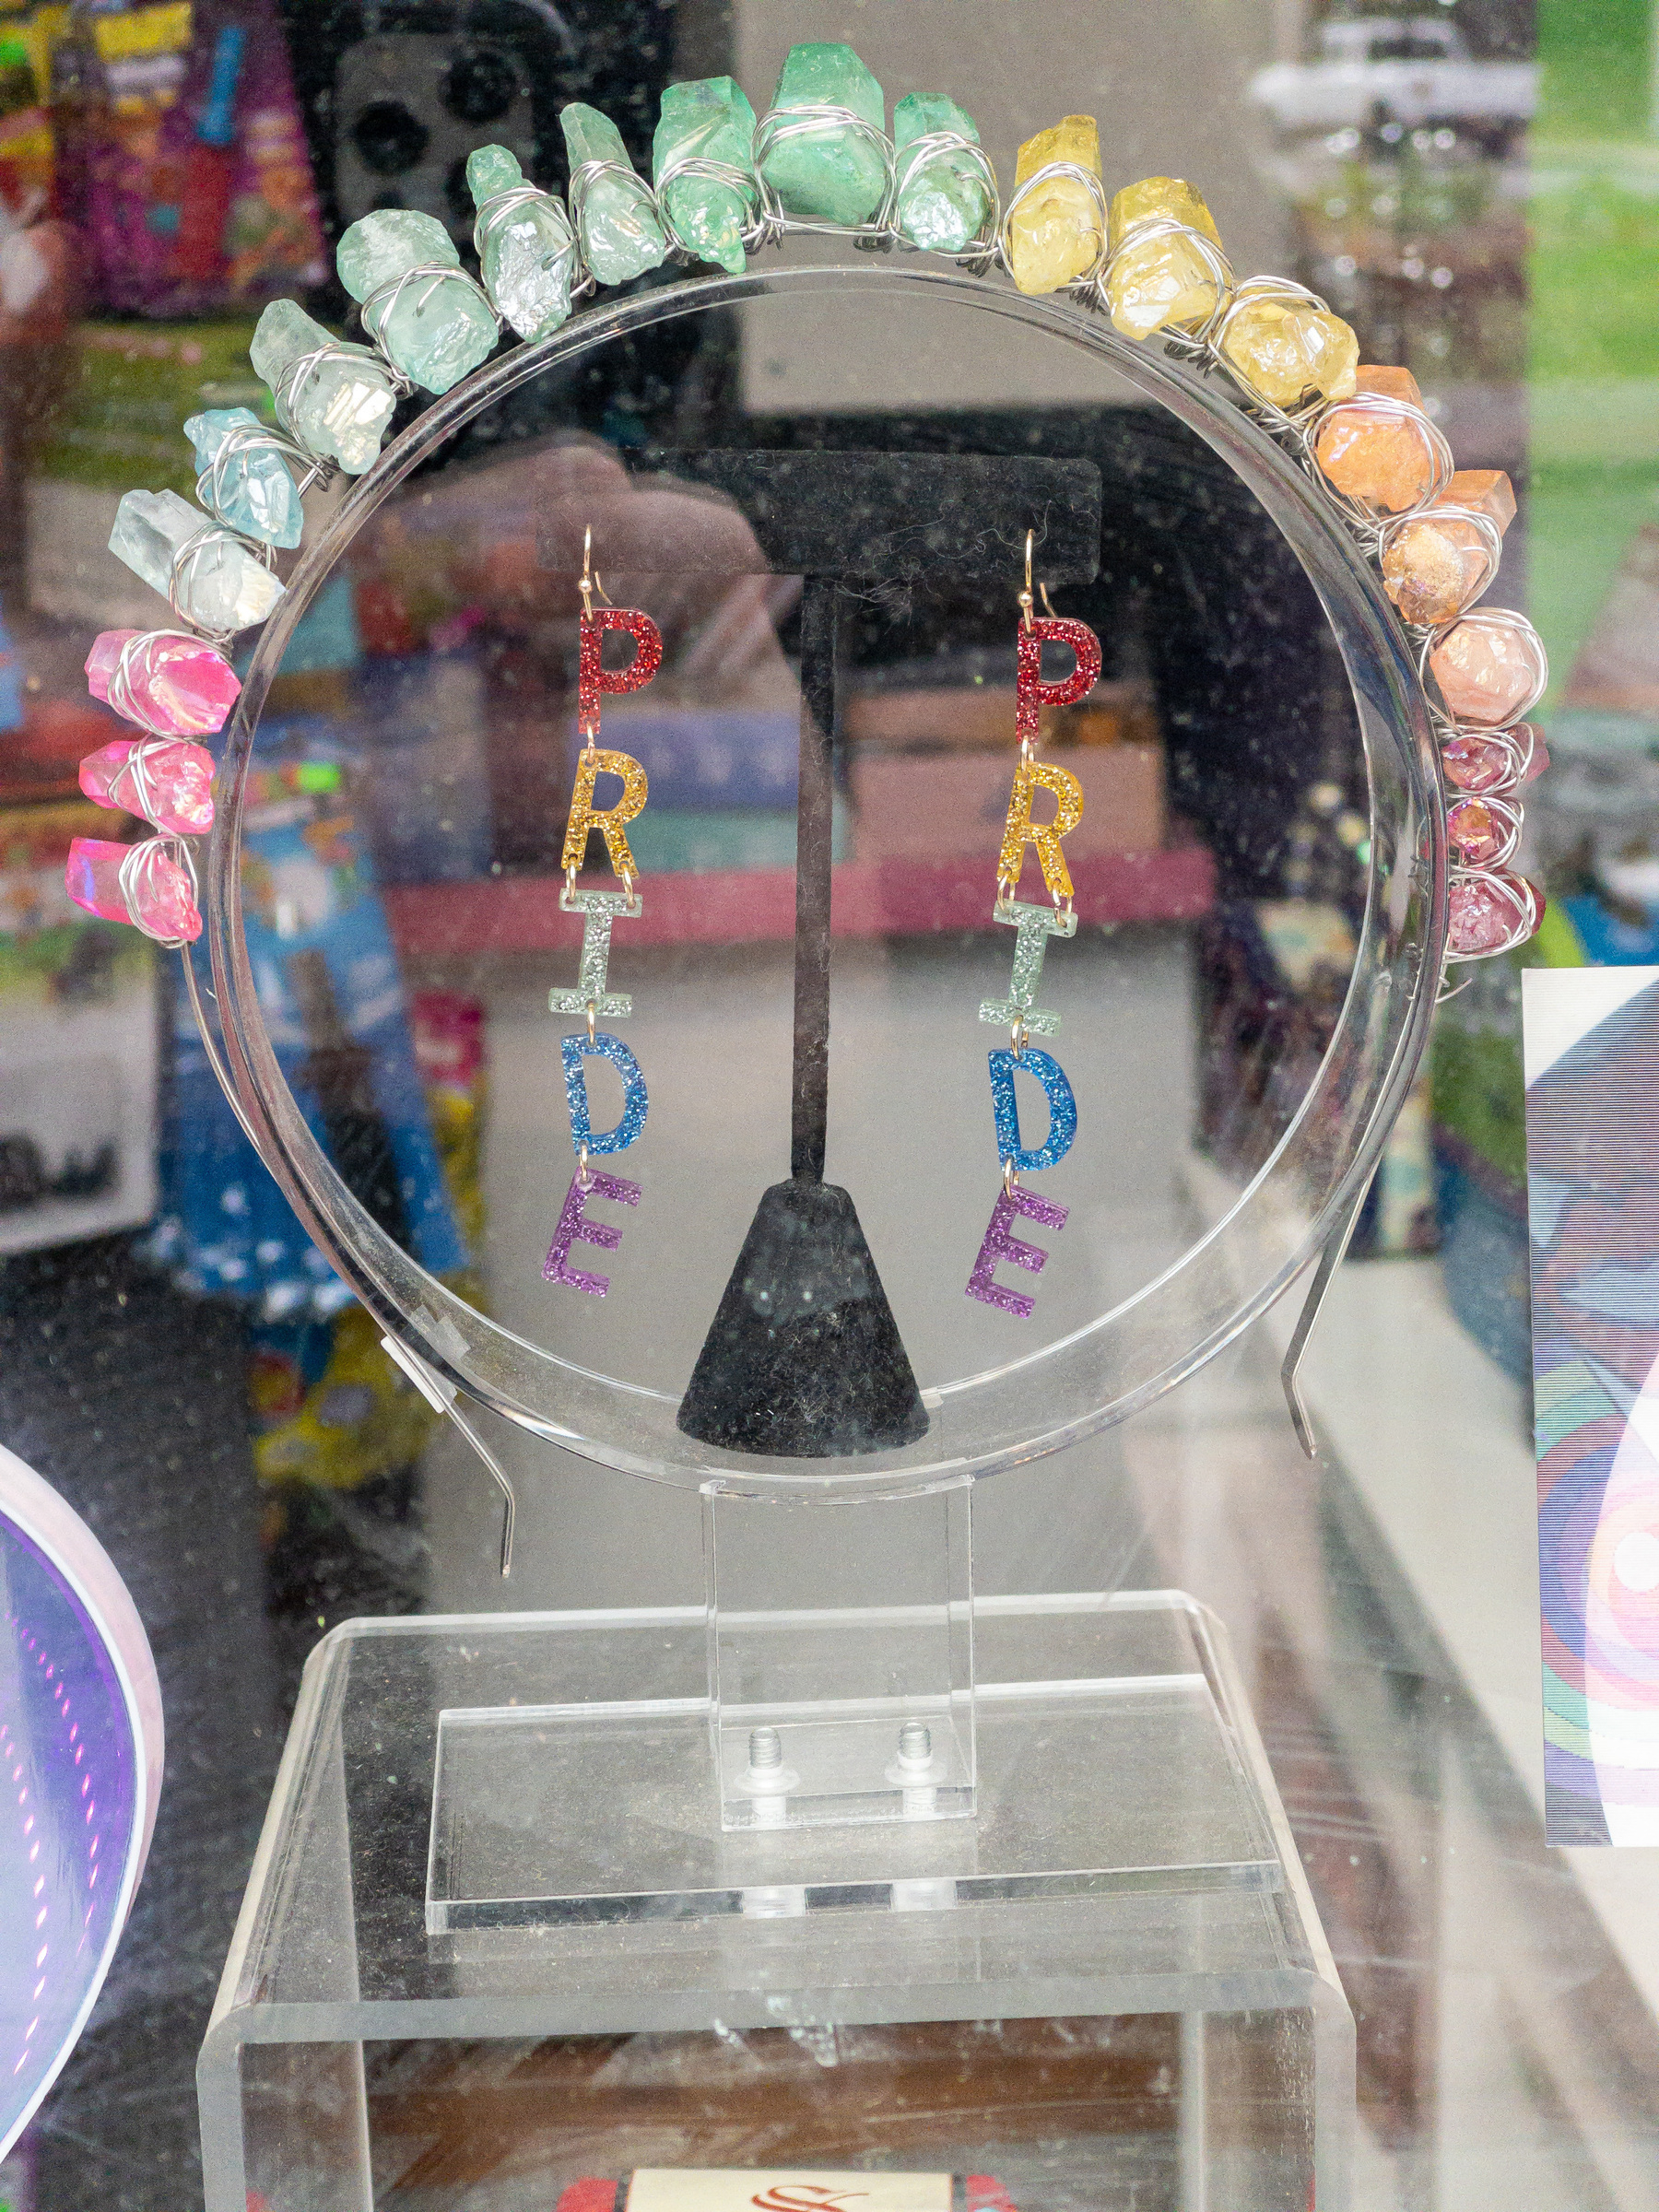 Pair of dangling pride earrings in a shop window.